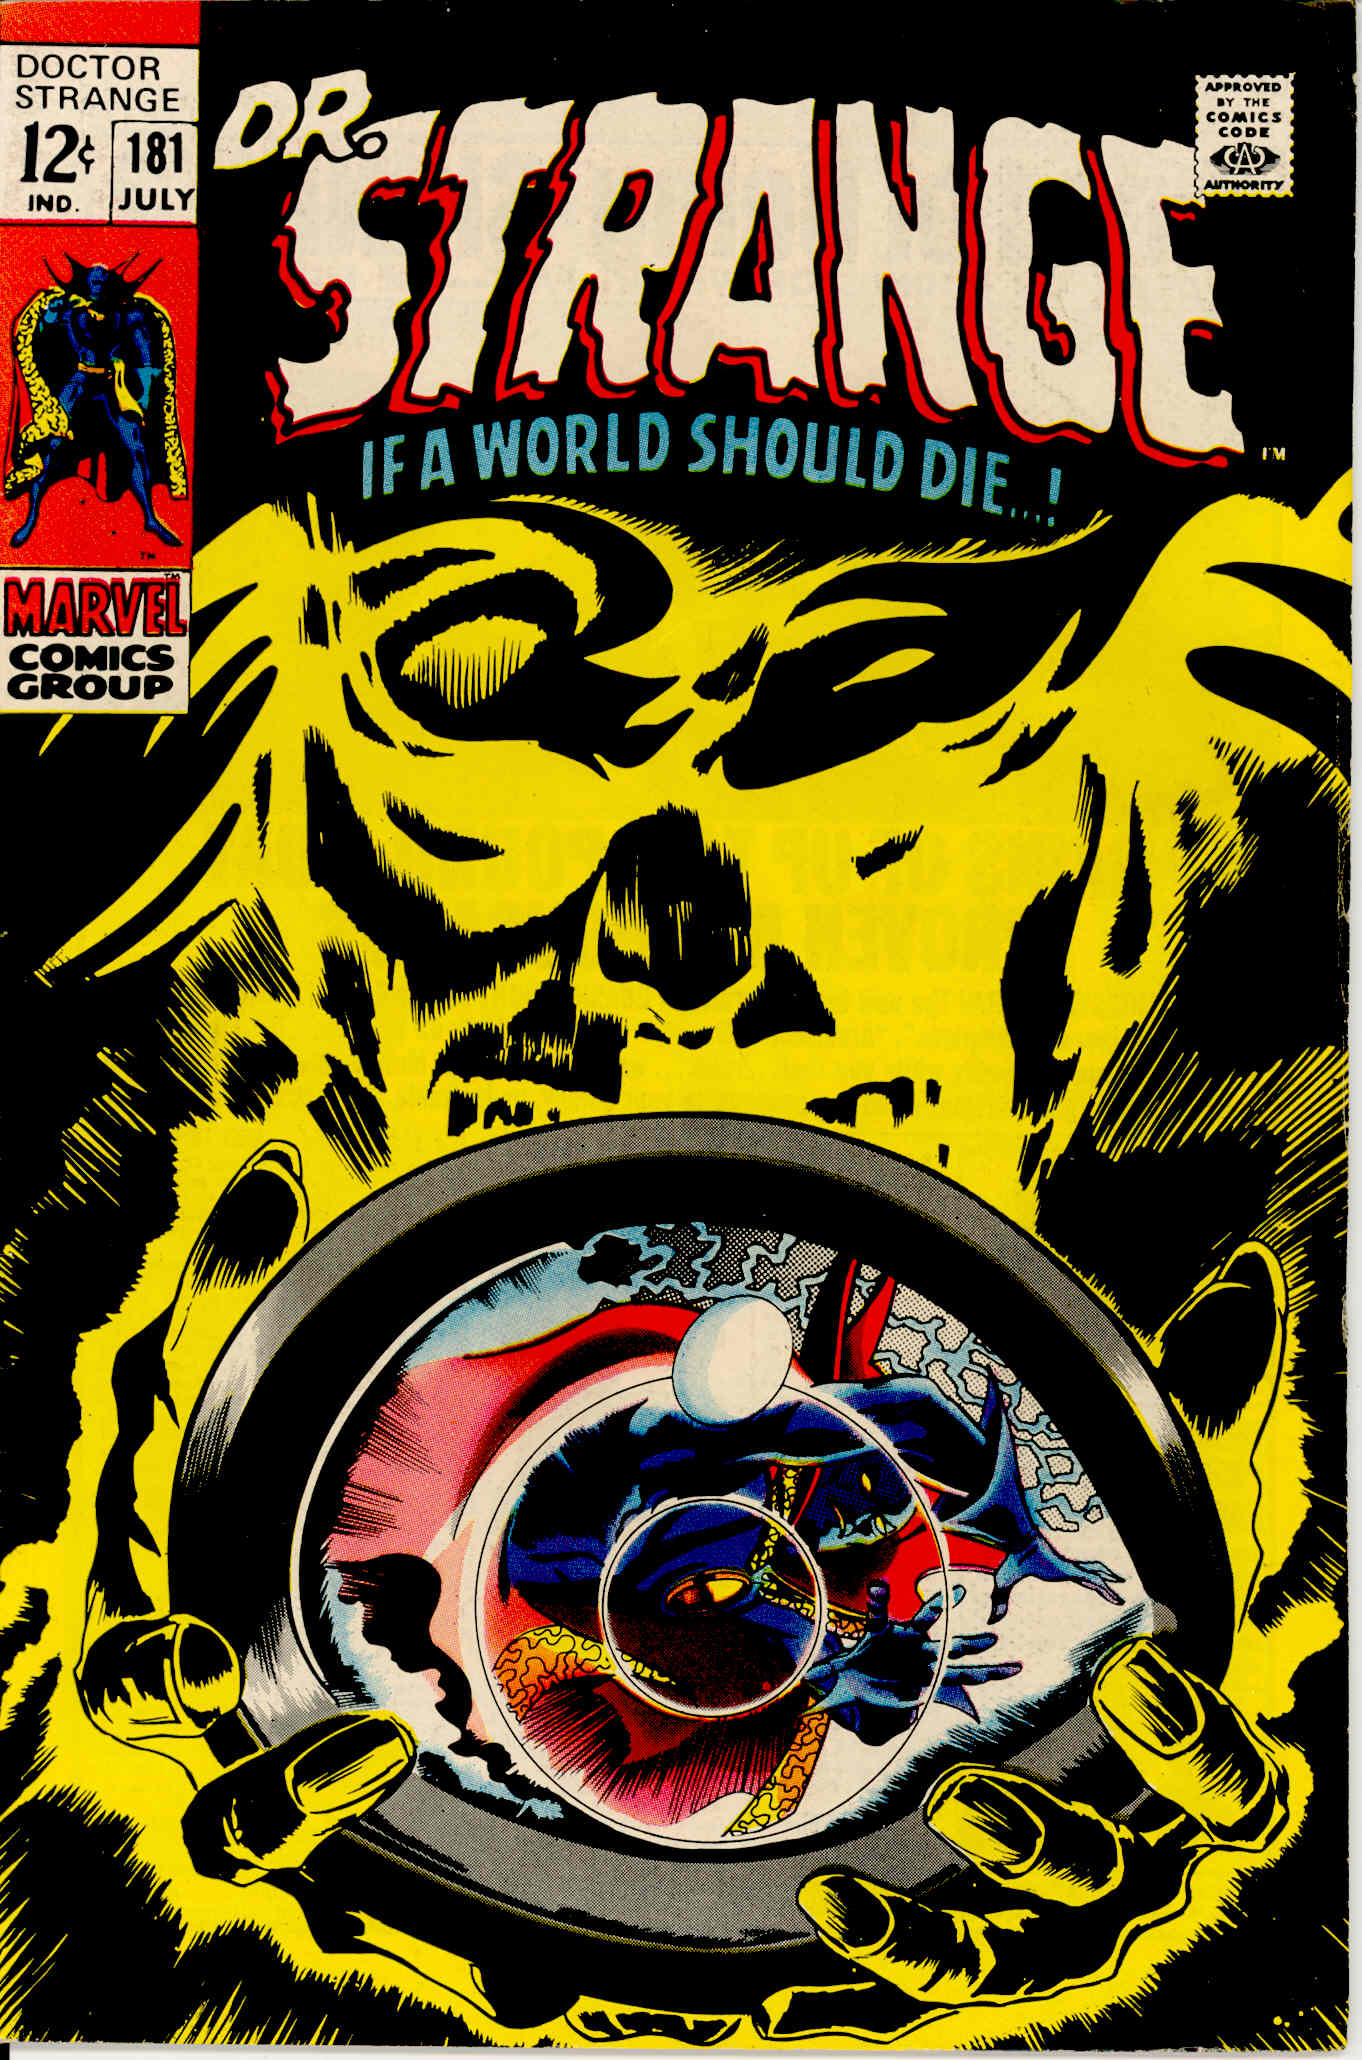 Read online Marvel Masterworks: Doctor Strange comic -  Issue # TPB 3 - 329